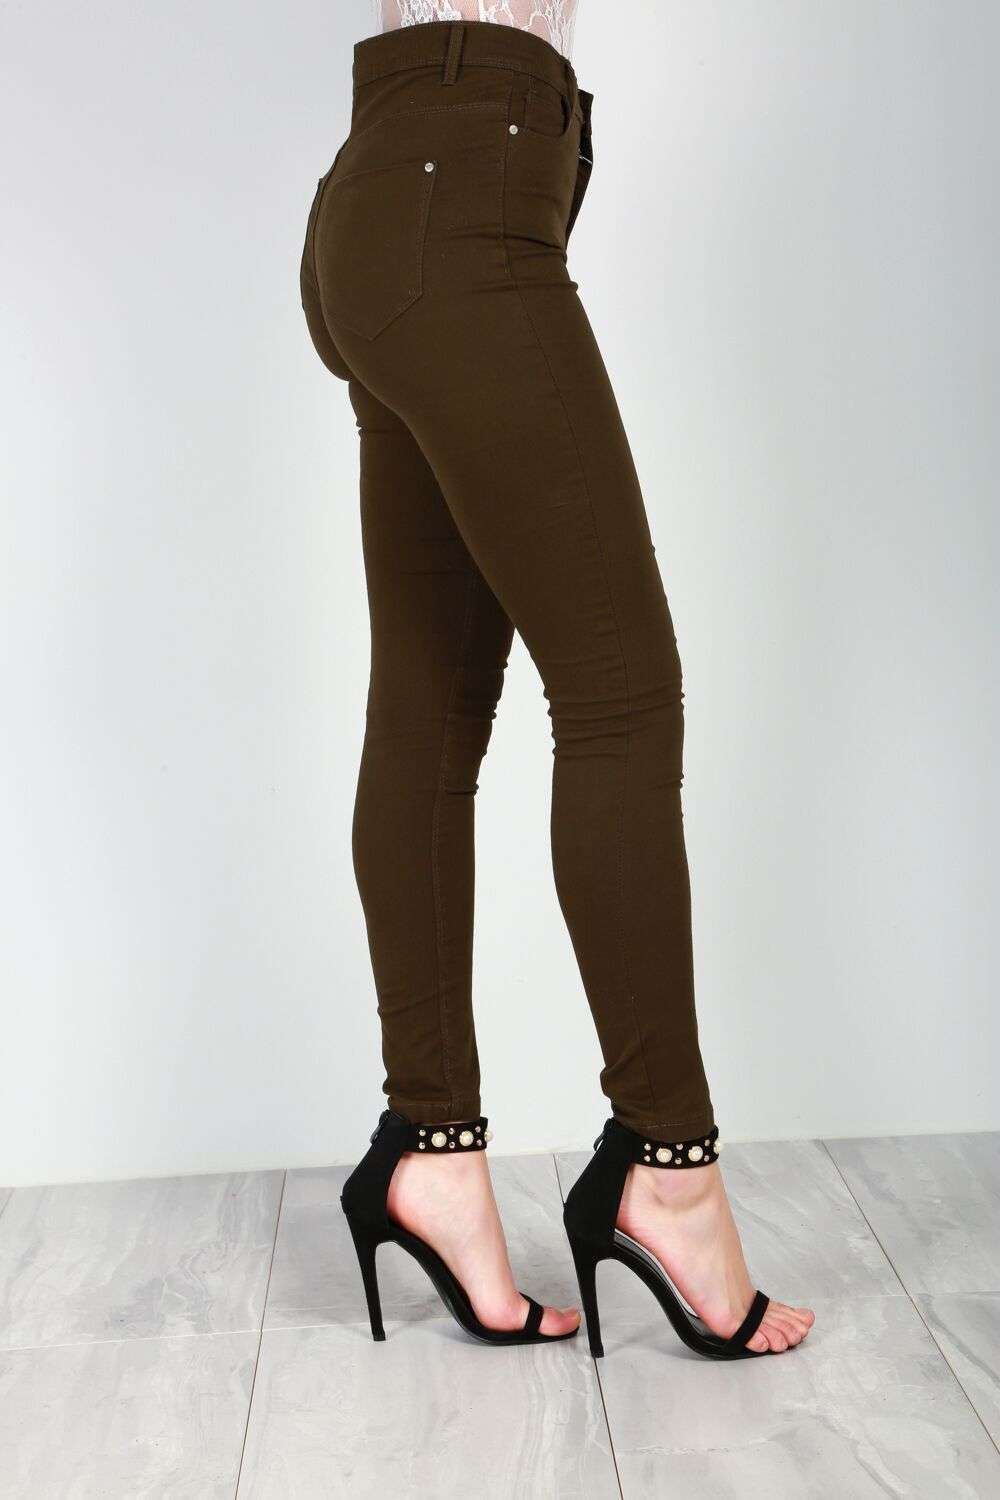 Esme High Waisted Khaki Skinny Fit Jeans - bejealous-com